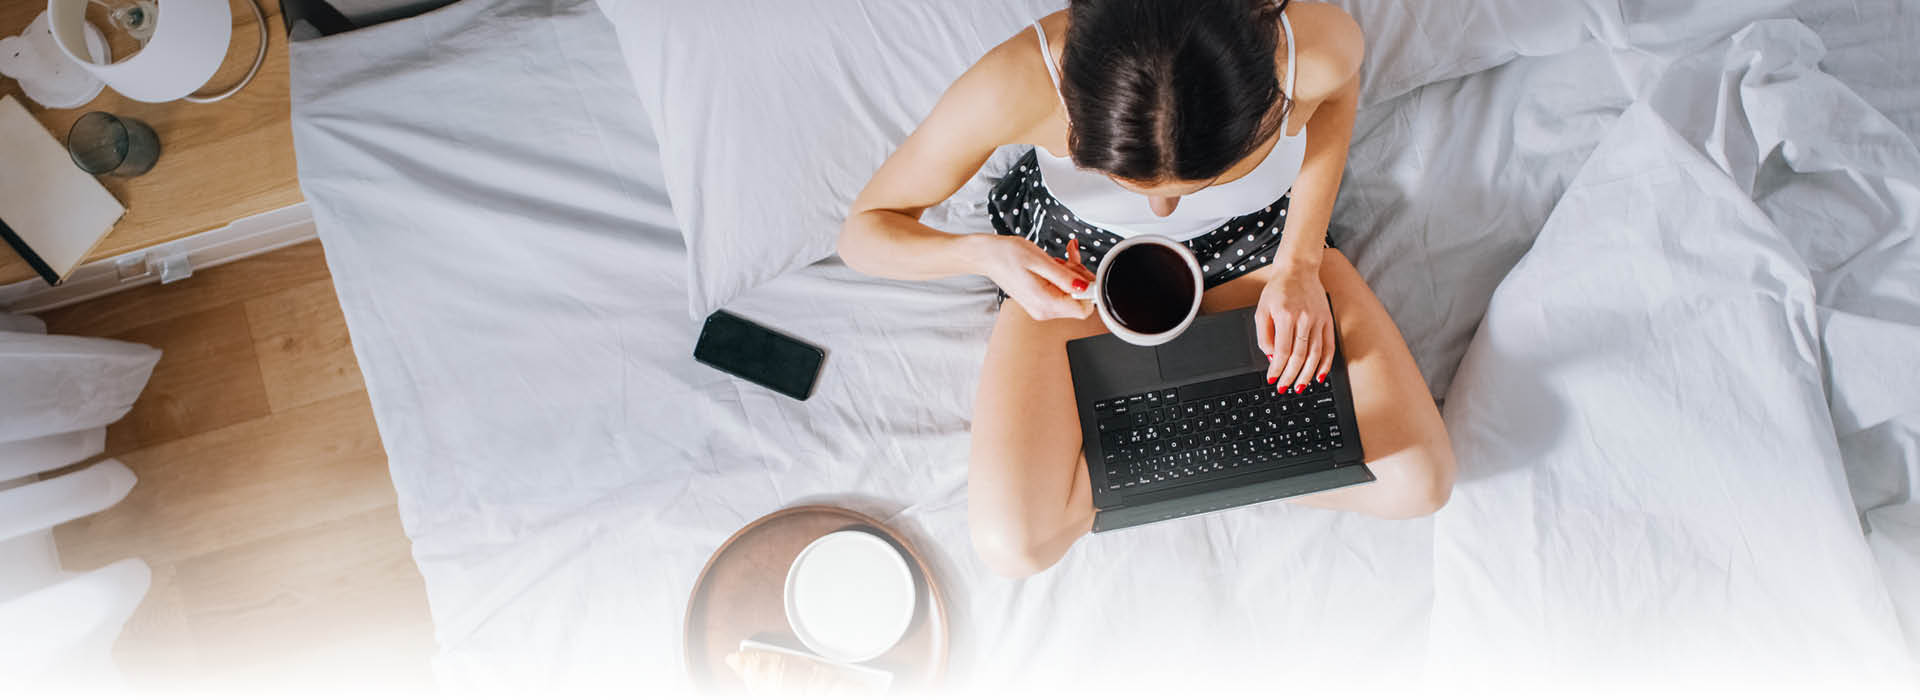 Frau mit Laptop und Kaffee im Bett